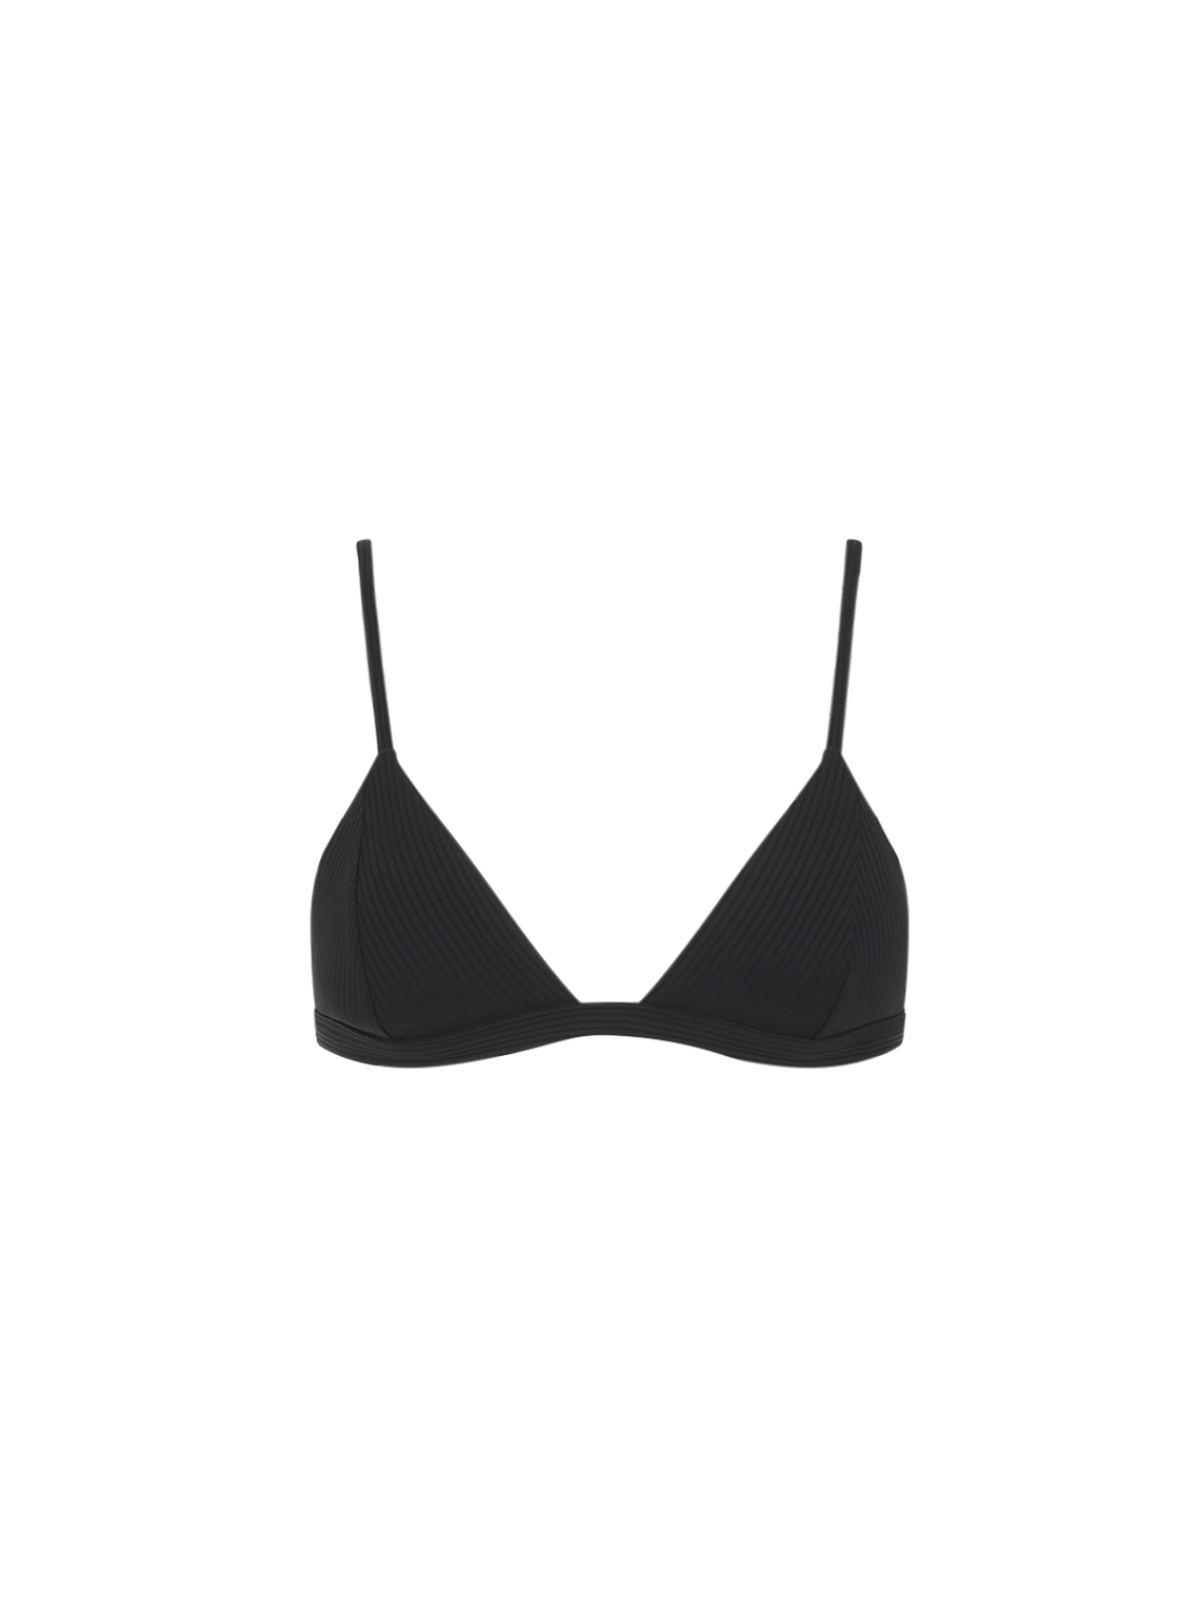 Valentina Bralette Bikini Top - Midnight Black Ribbed